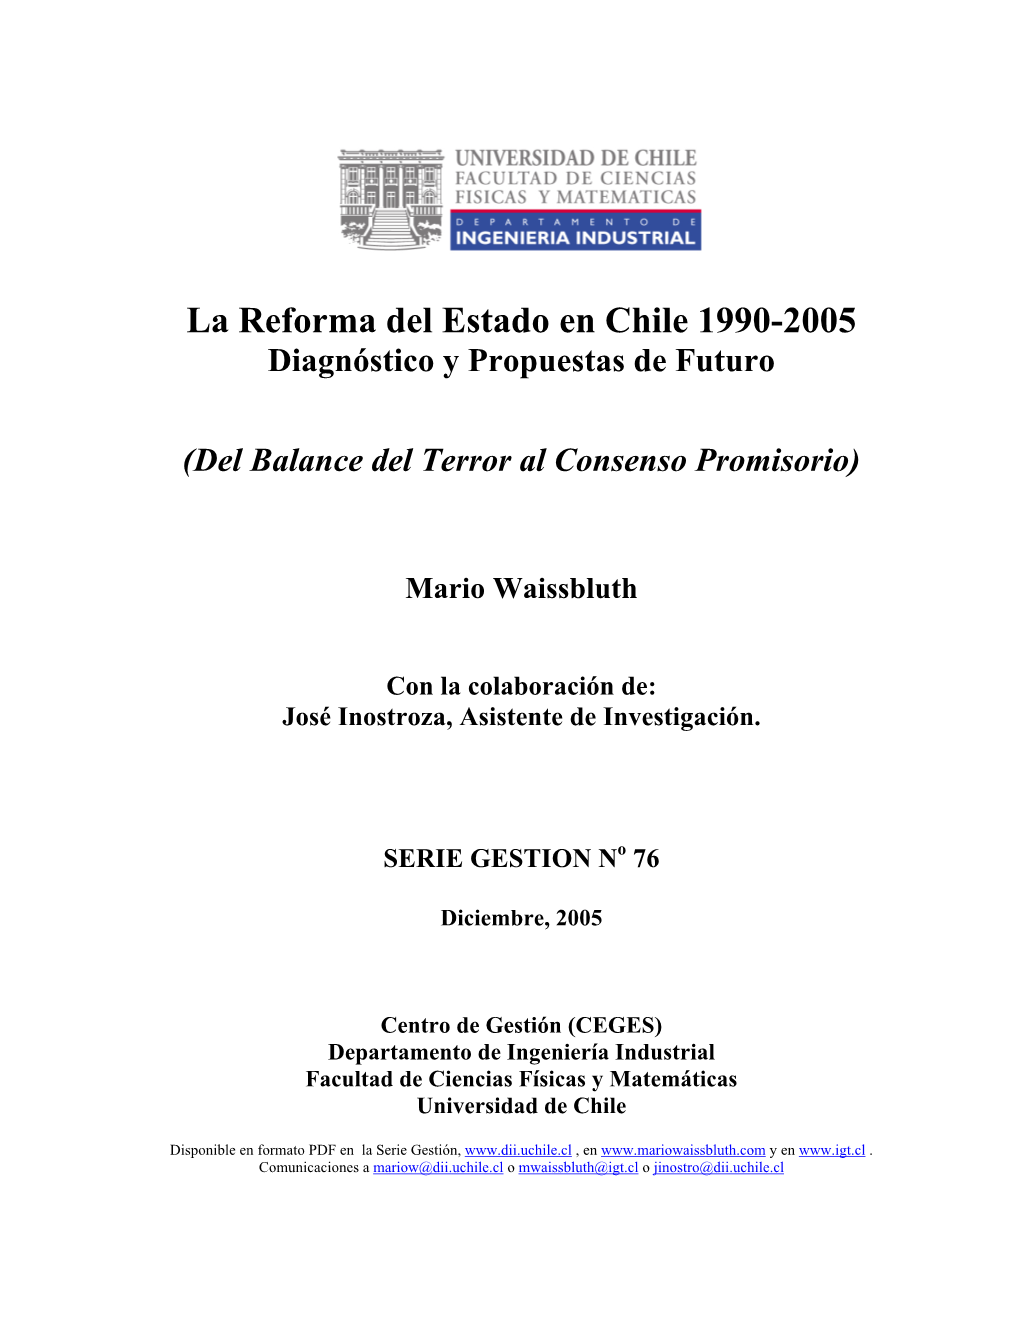 La Reforma Del Estado En Chile 1990-2005 Diagnóstico Y Propuestas De Futuro